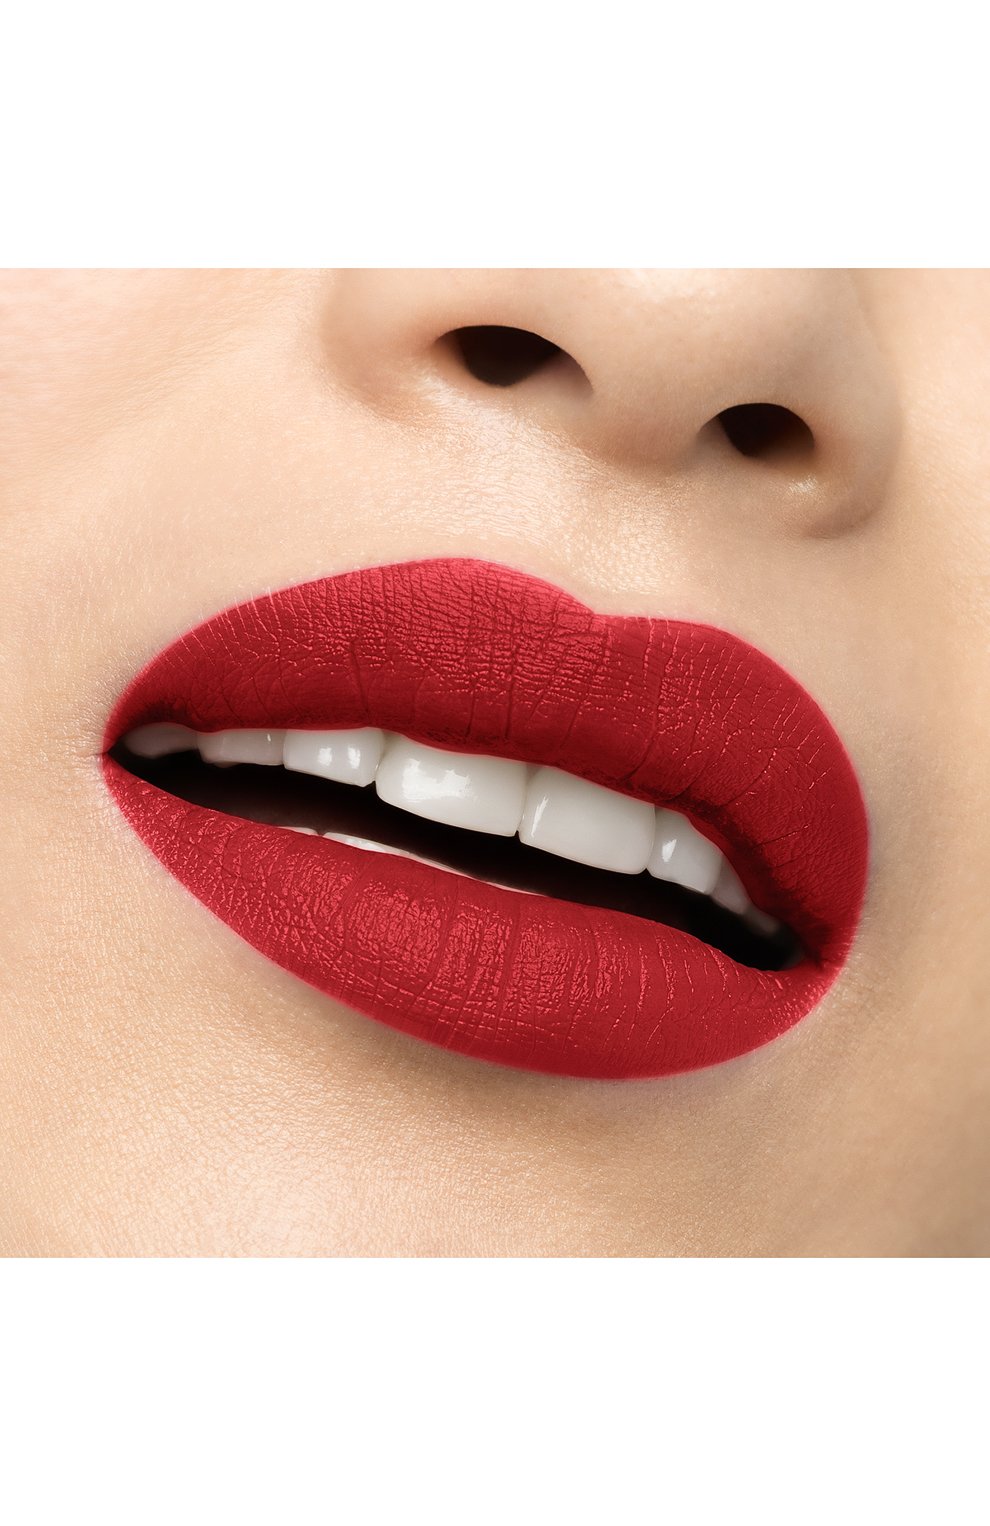 Матовая помада для губ rouge louboutin velvet matte, оттенок red dramadouce CHRISTIAN LOUBOUTIN  цвета, арт. 8435415068772 | Фото 5 (Финишное покрытие: Матовый)